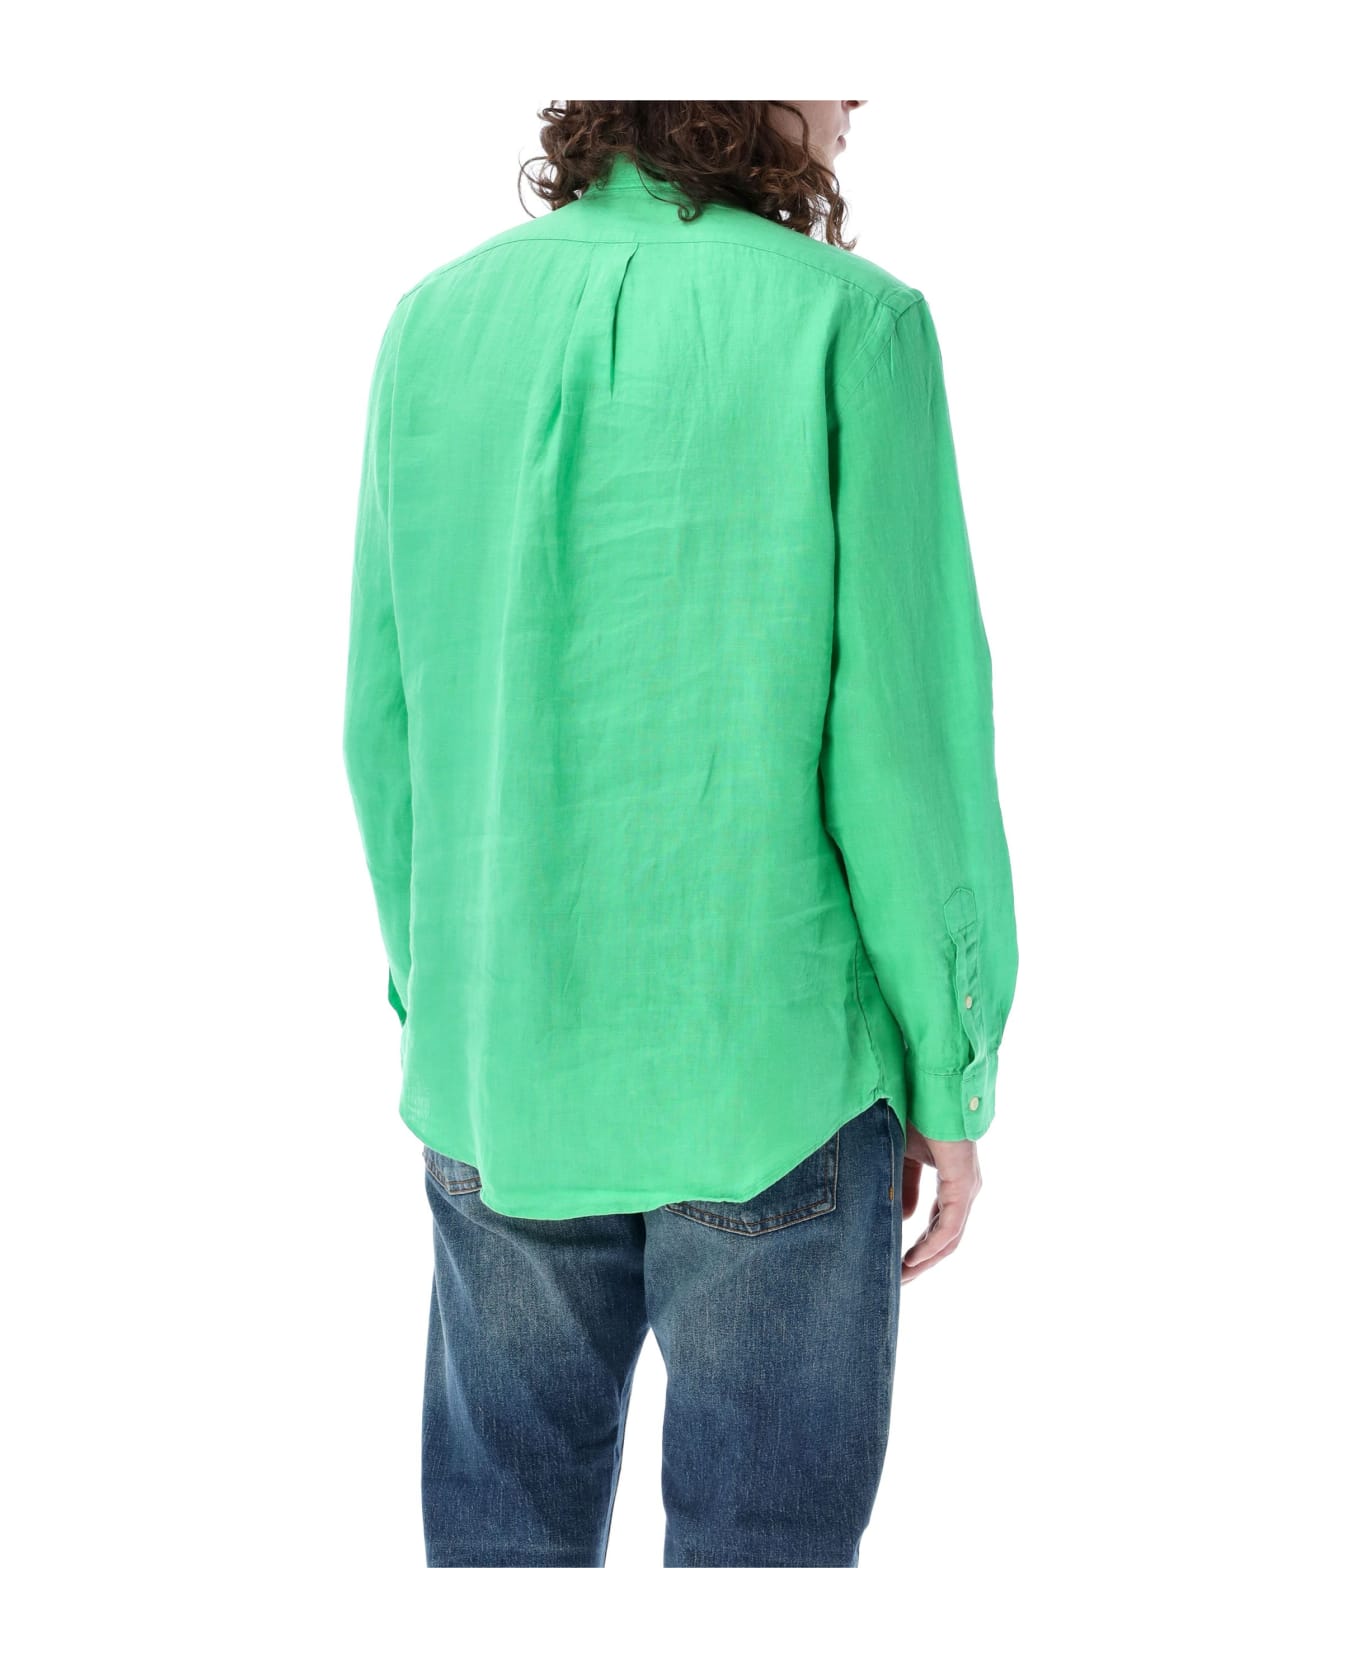 Ralph Lauren Custom Fit Shirt - green シャツ